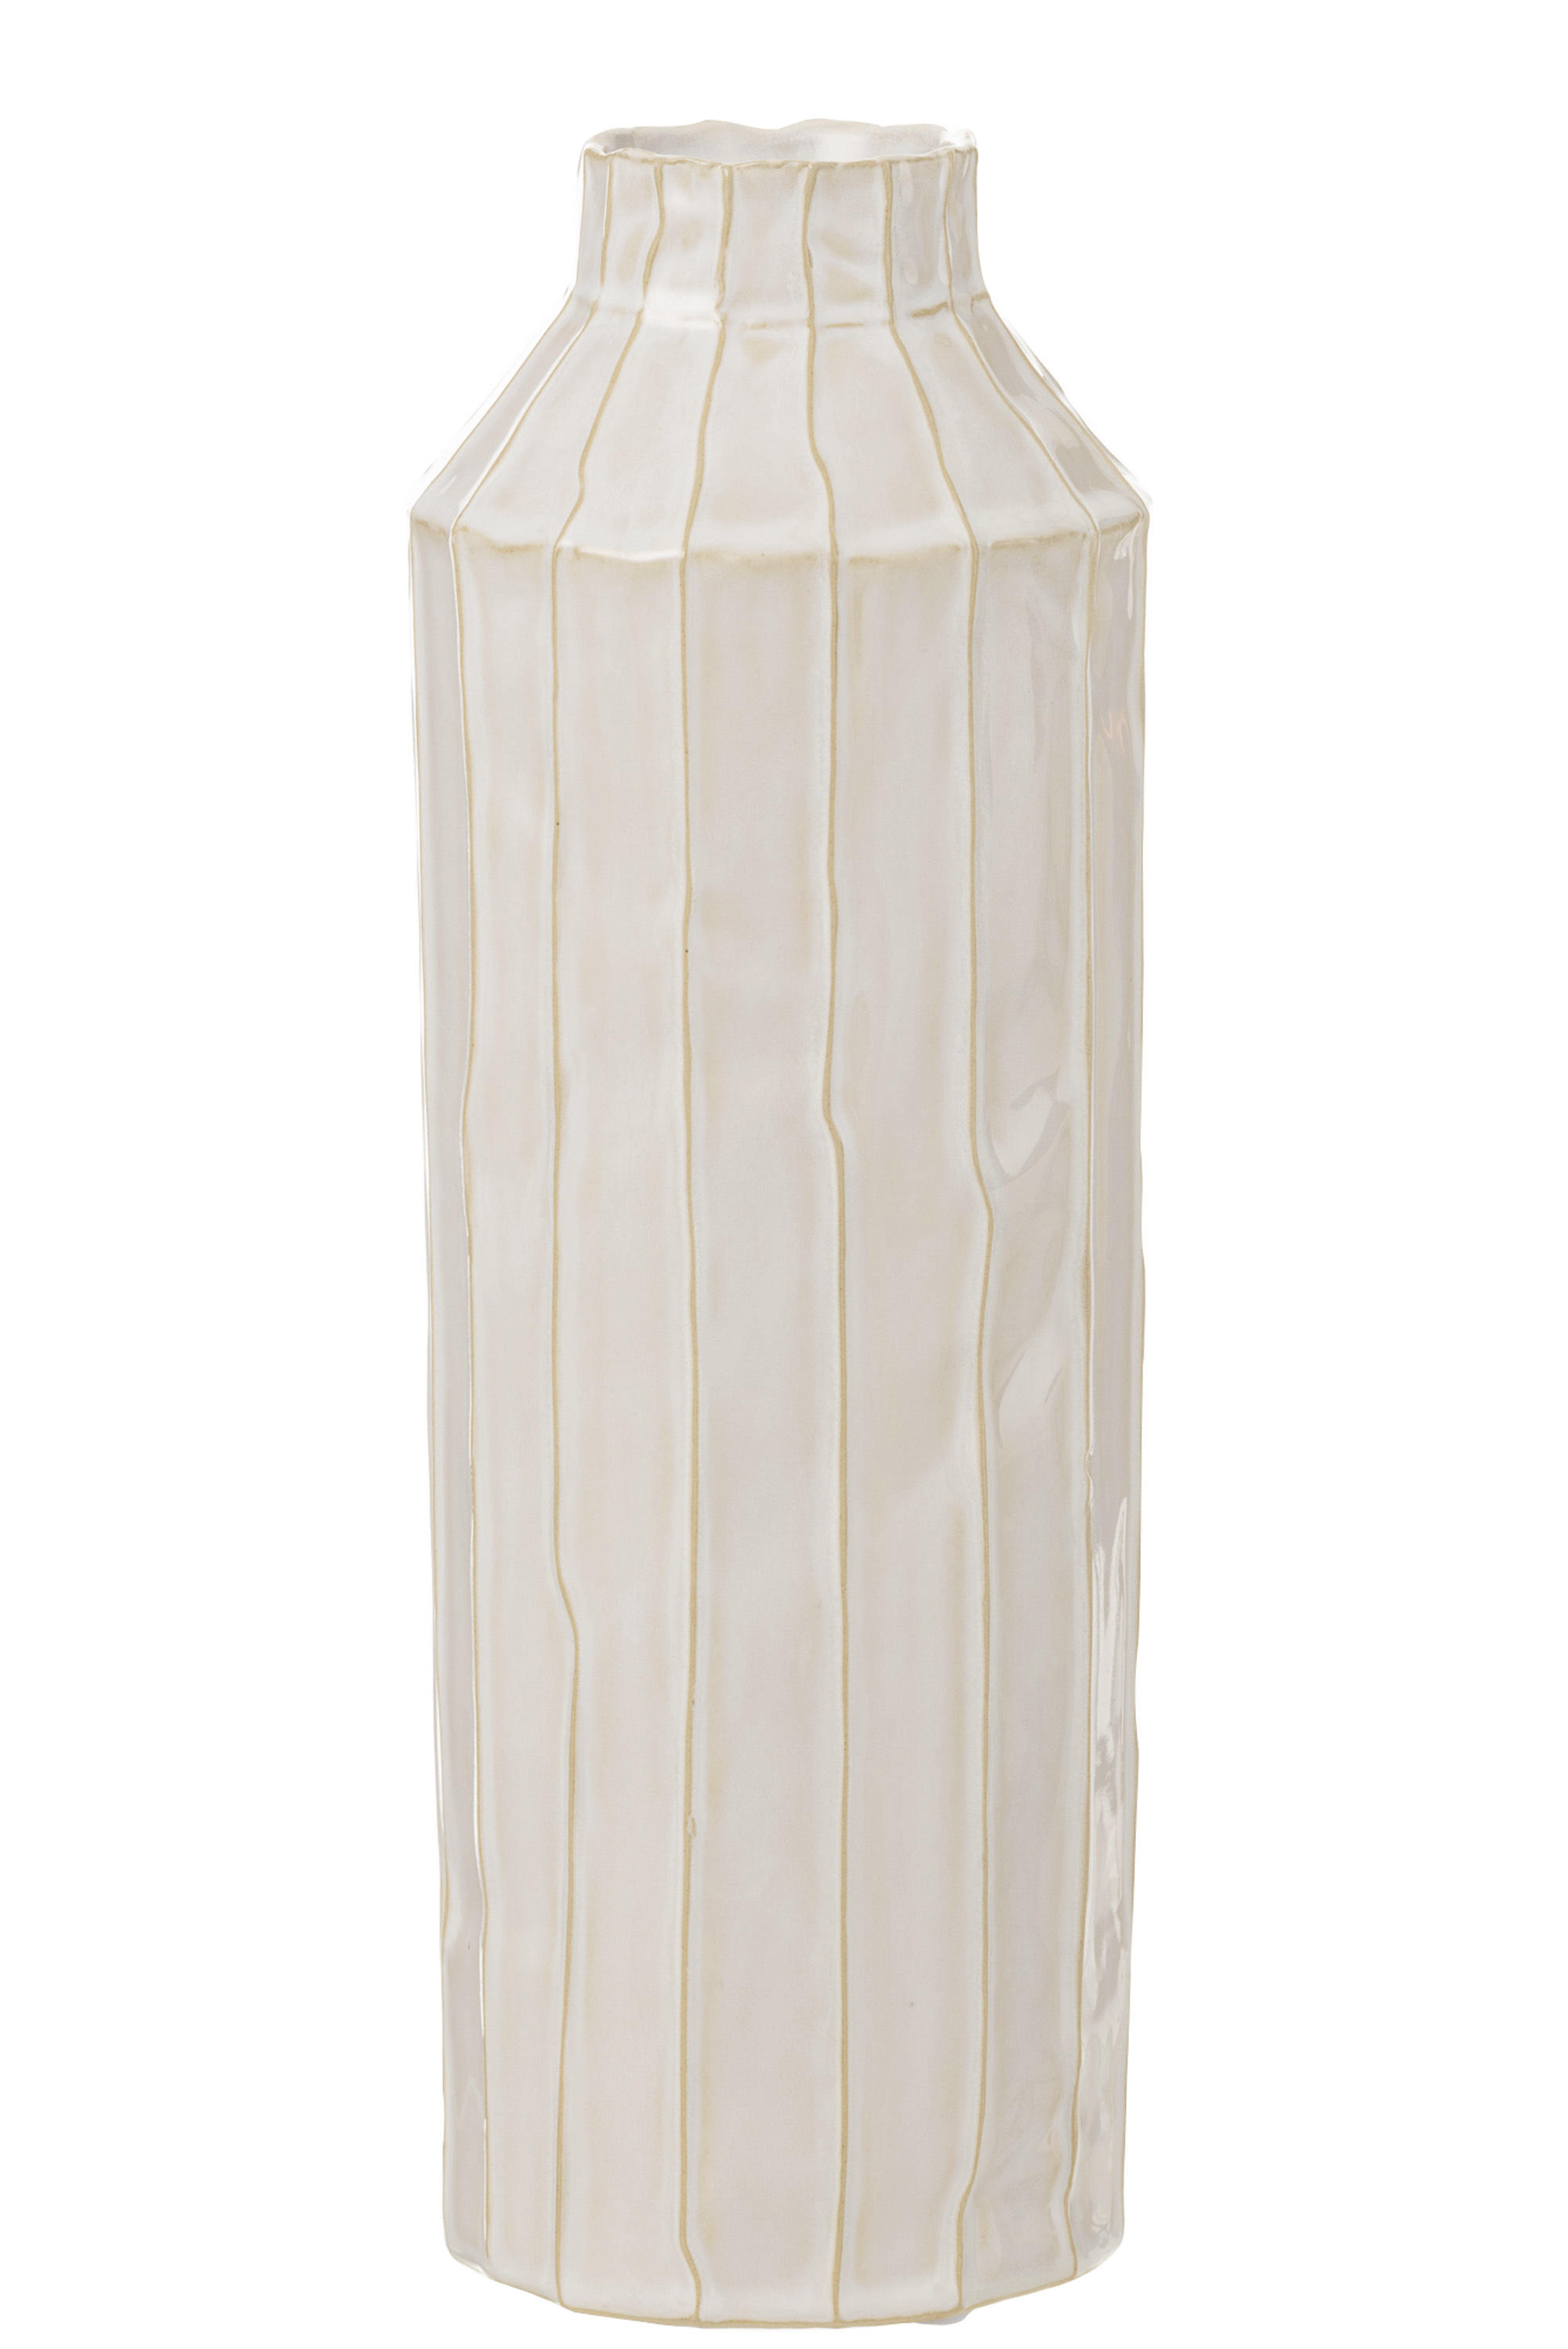 DEKOVASE nicht wasserdicht  - Weiß, Basics, Keramik (12/12/34cm)